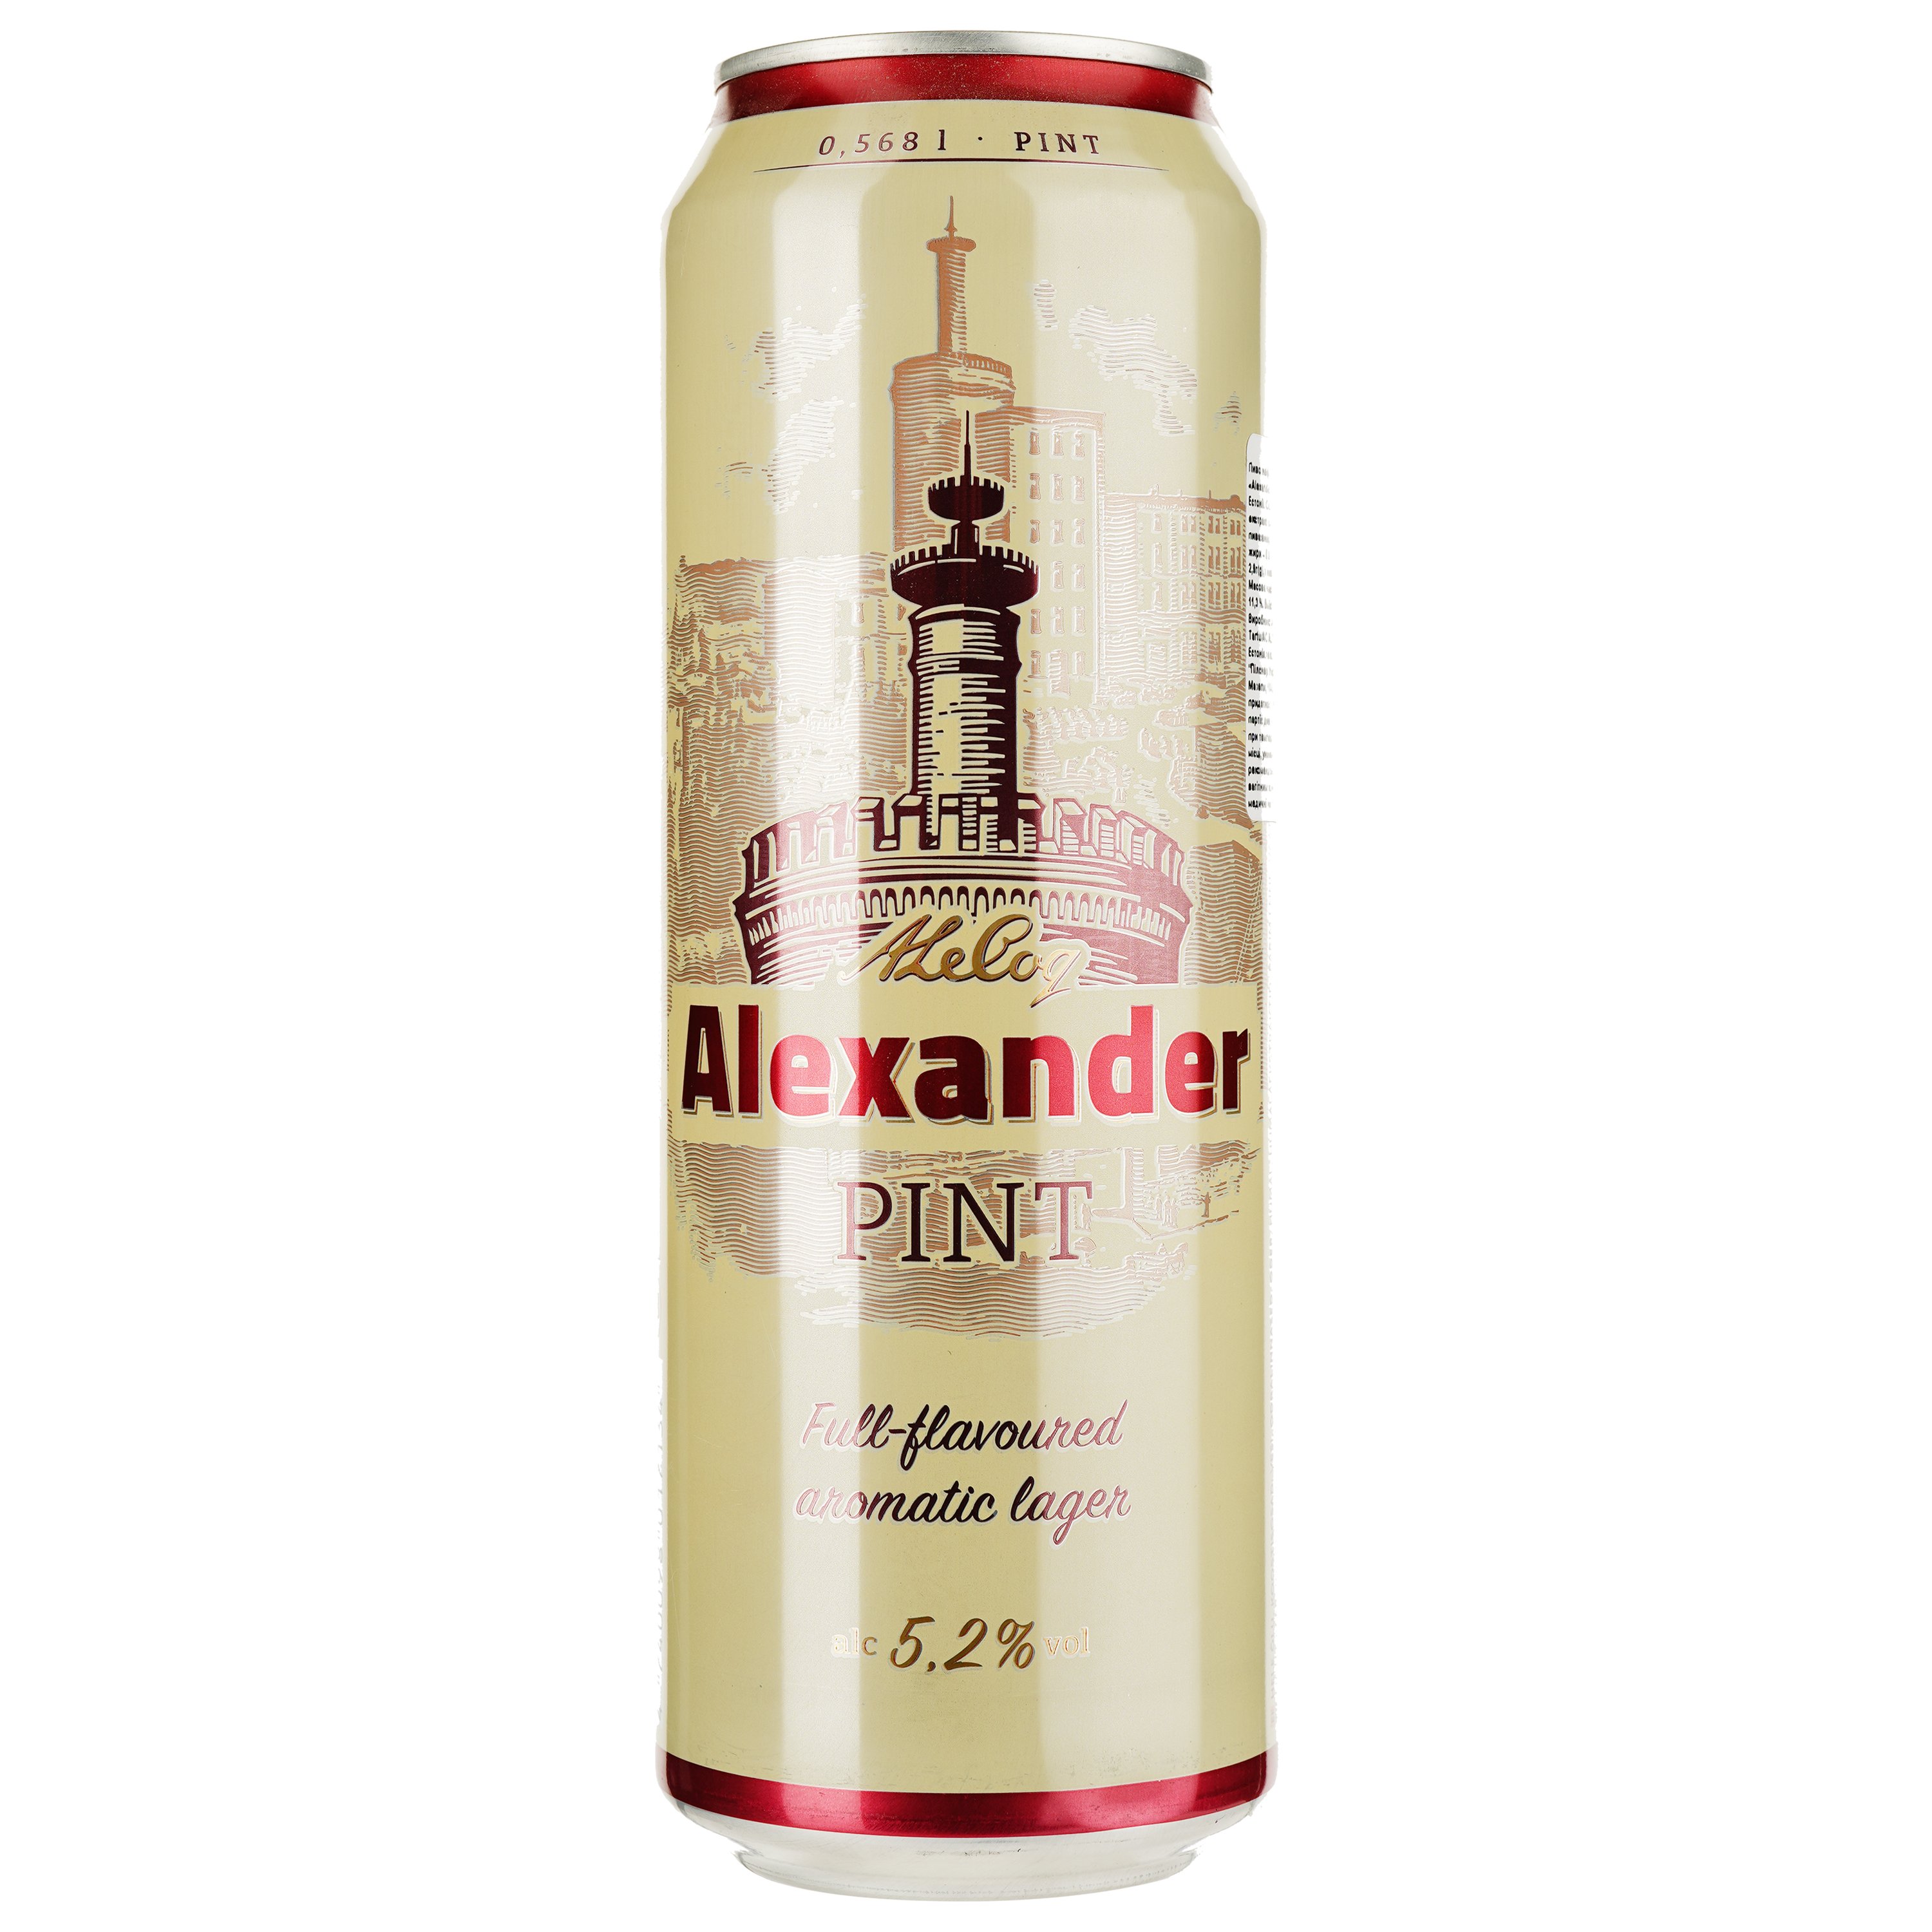 Пиво A. Le Coq Alexander, светлое, фильтрованное, 5,2%, ж/б, 0,568 л - фото 1